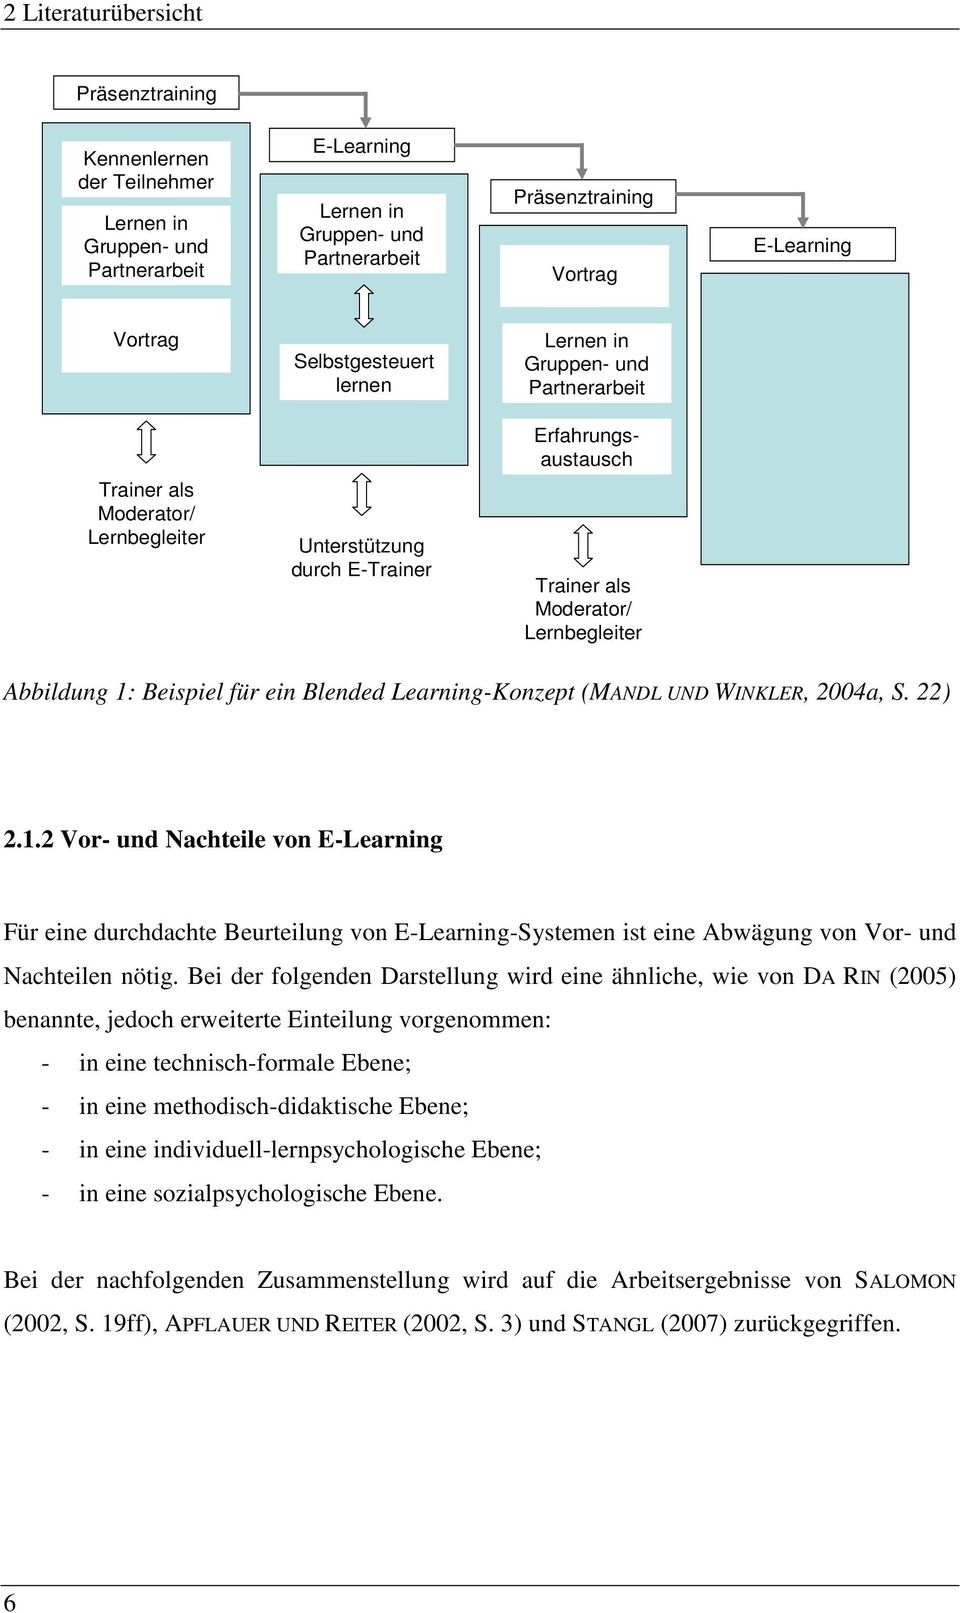 Learning-Konzept (MANDL UND WINKLER, 2004a, S. 22) 2.1.2 Vor- und Nachteile von E-Learning Für eine durchdachte Beurteilung von E-Learning-Systemen ist eine Abwägung von Vor- und Nachteilen nötig.